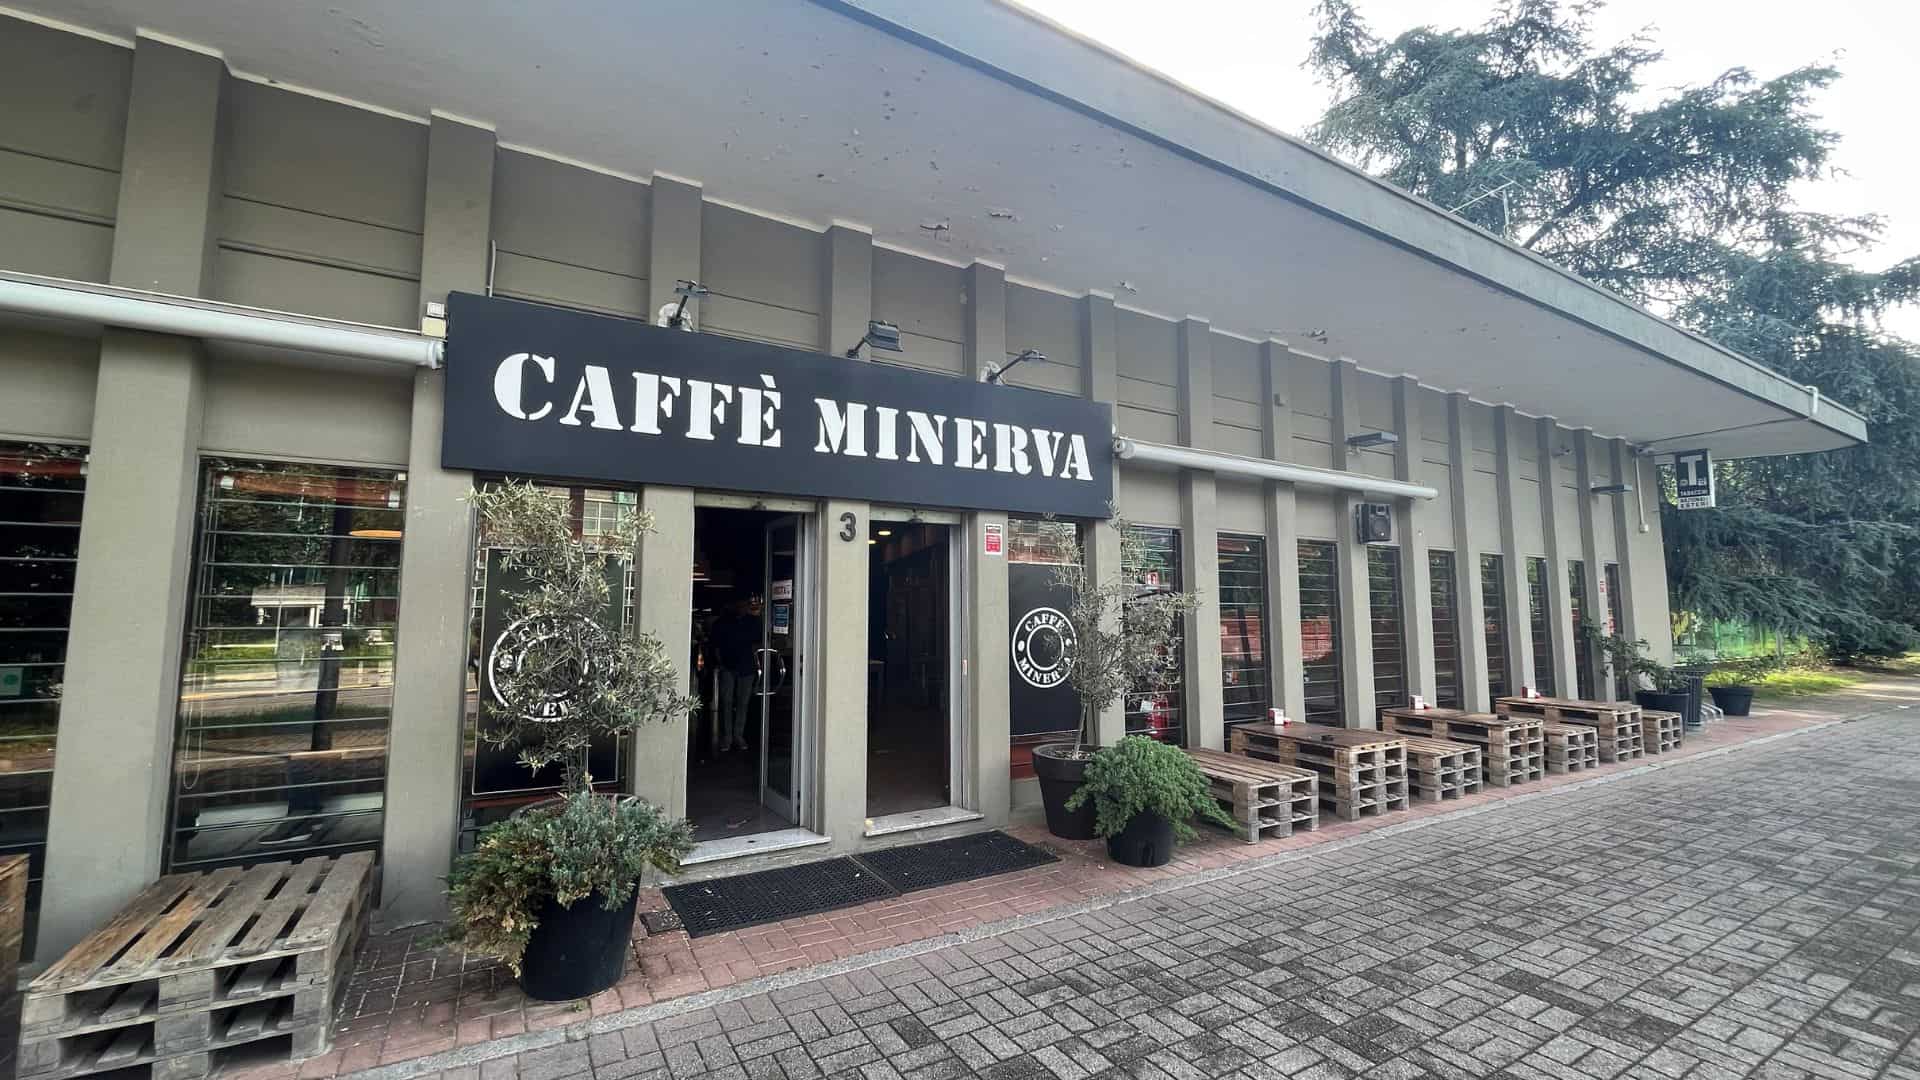 Caffè Minerva oggi